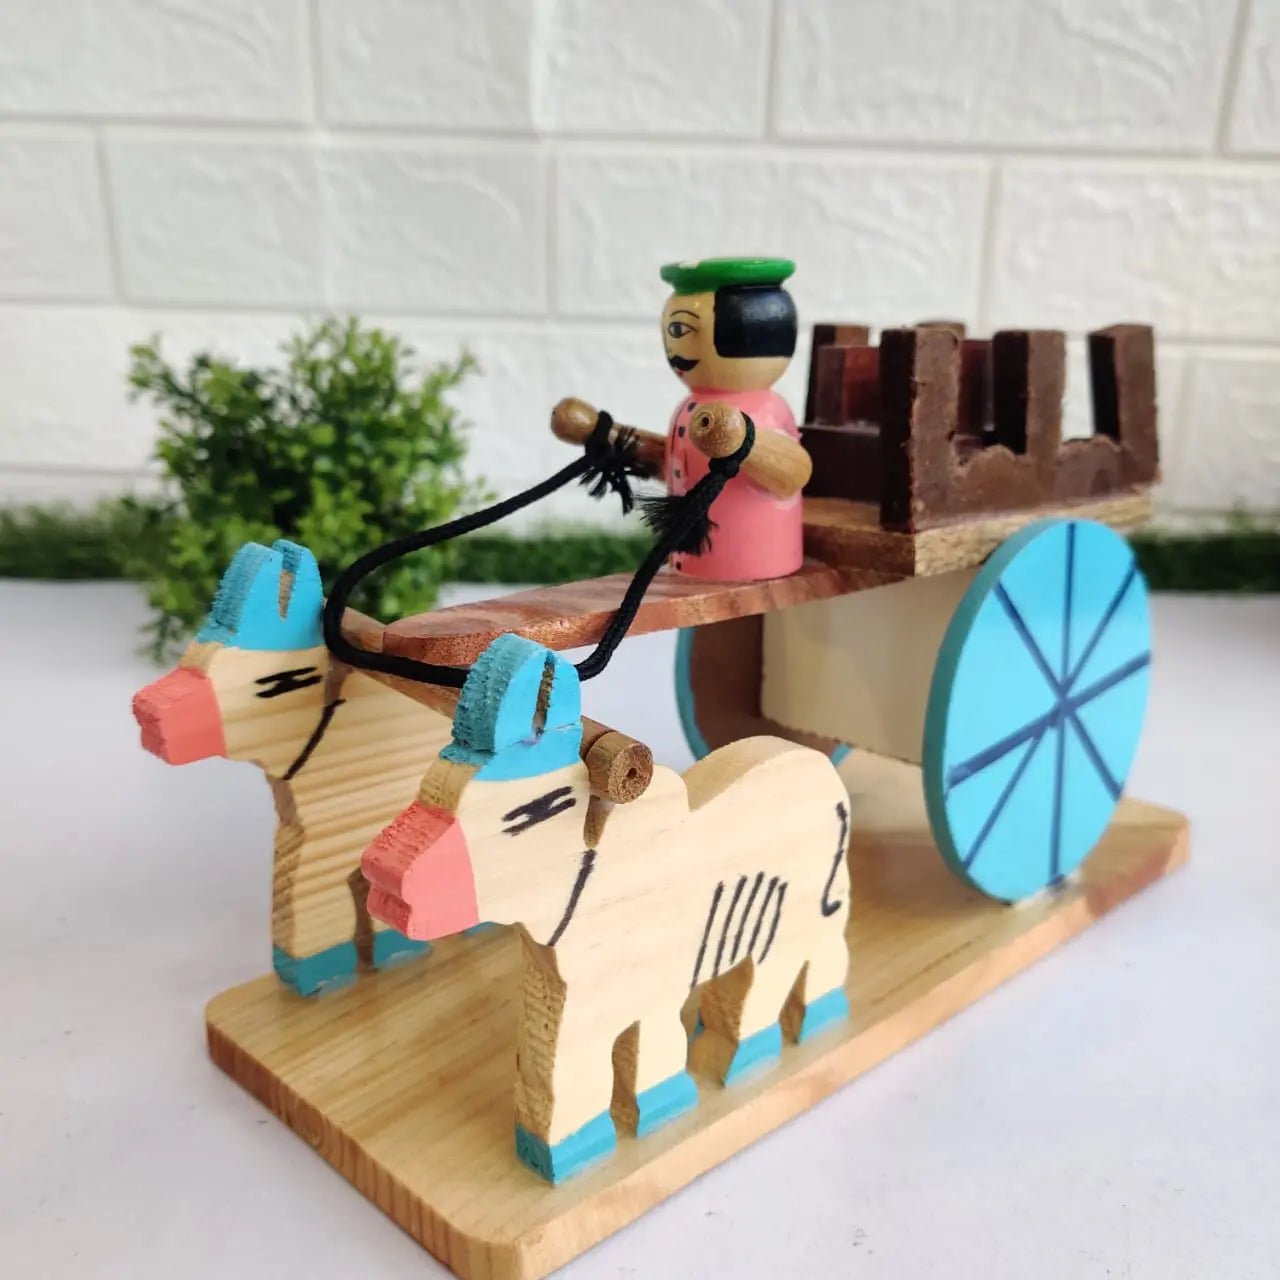 Wooden Man Riding Bullock cart - MyLittleTales